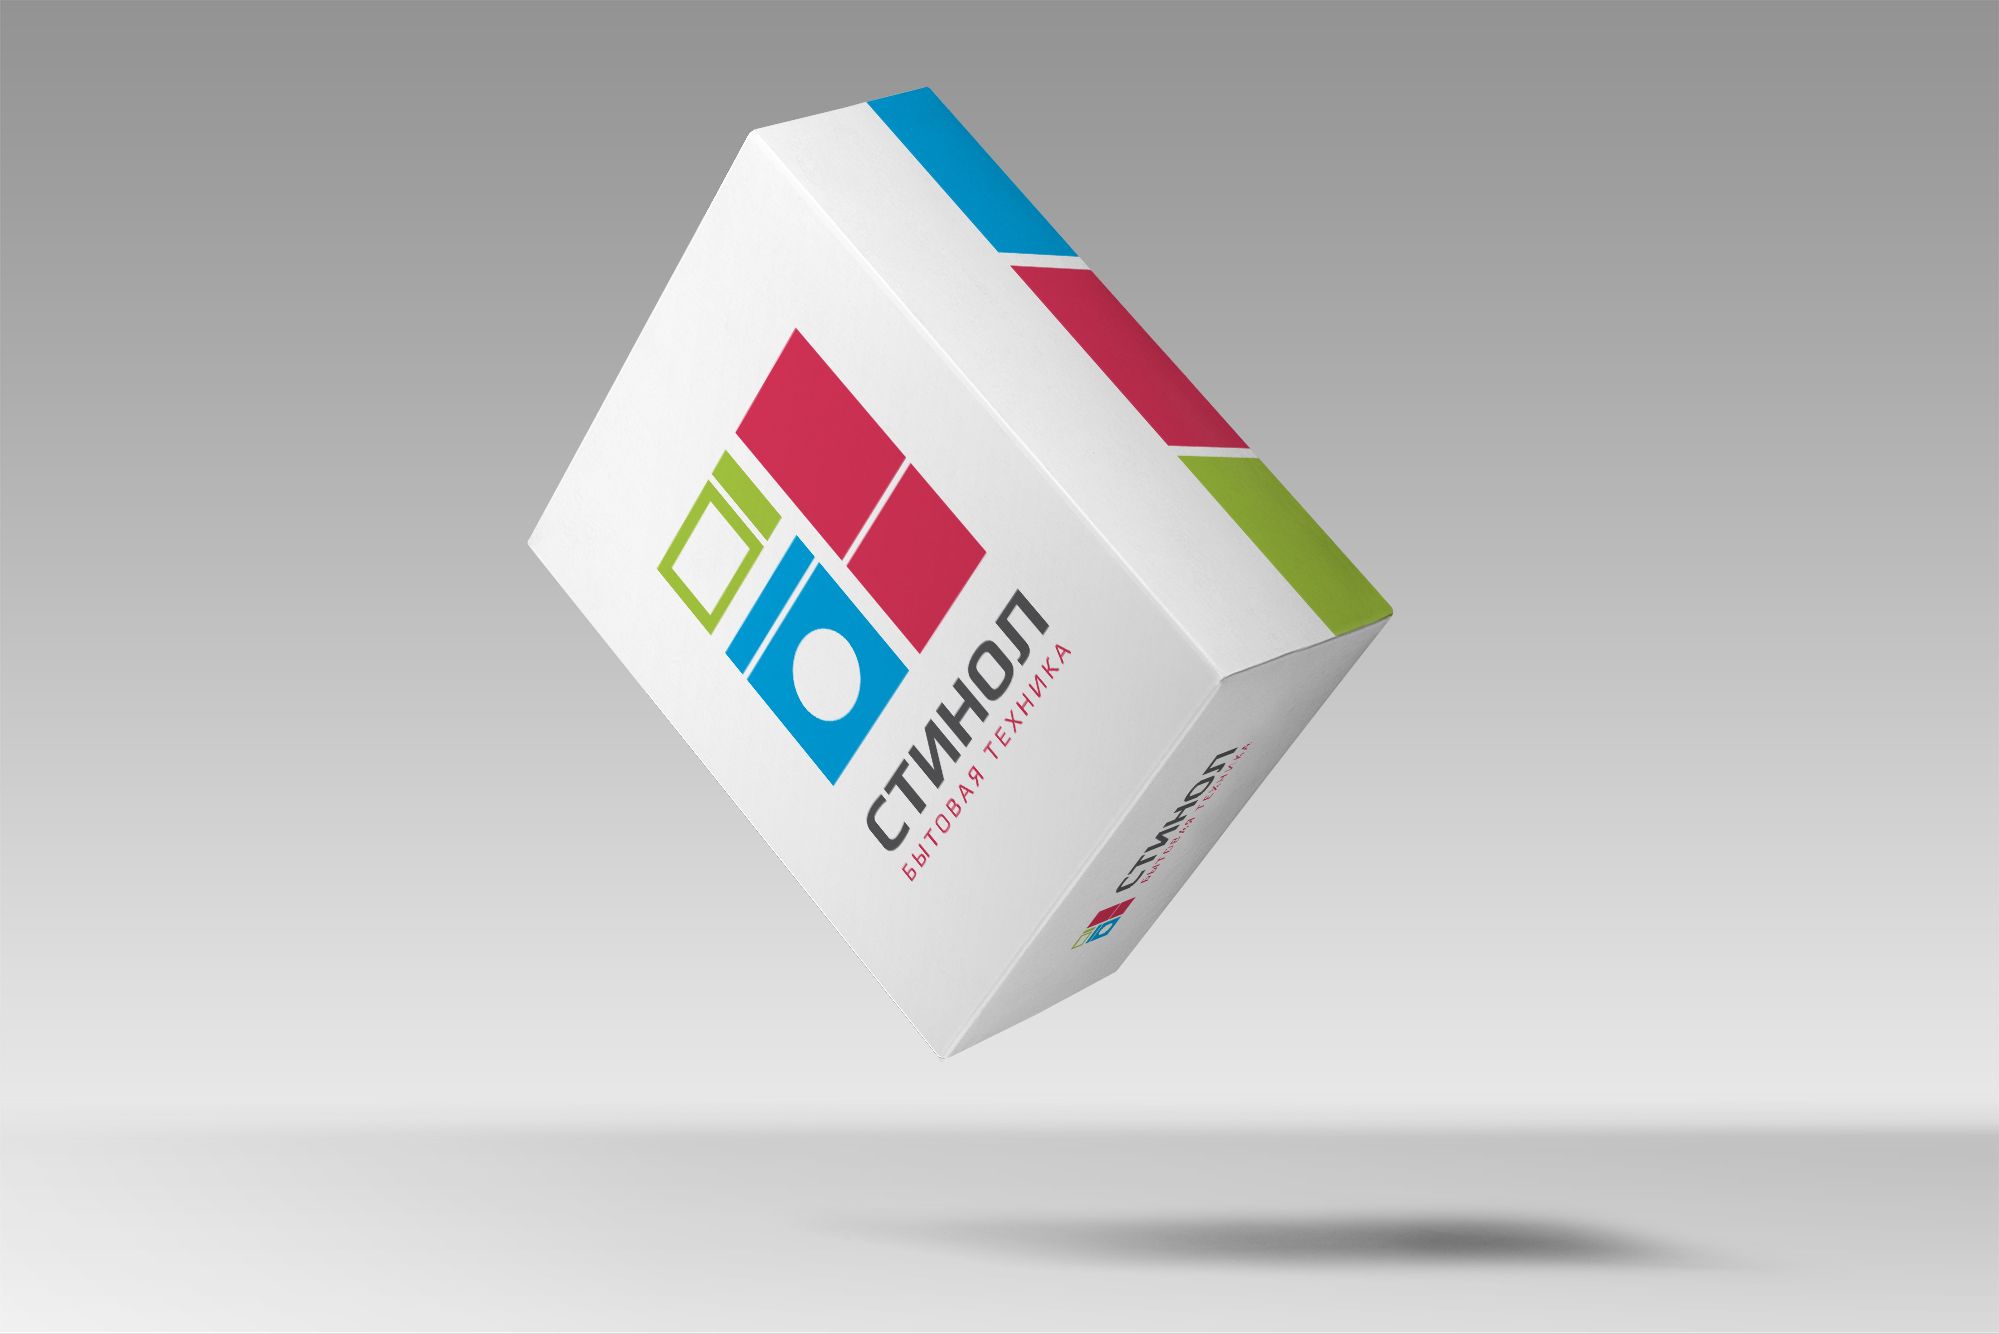 Лого и фирменный стиль для СТИНОЛ - дизайнер U4po4mak